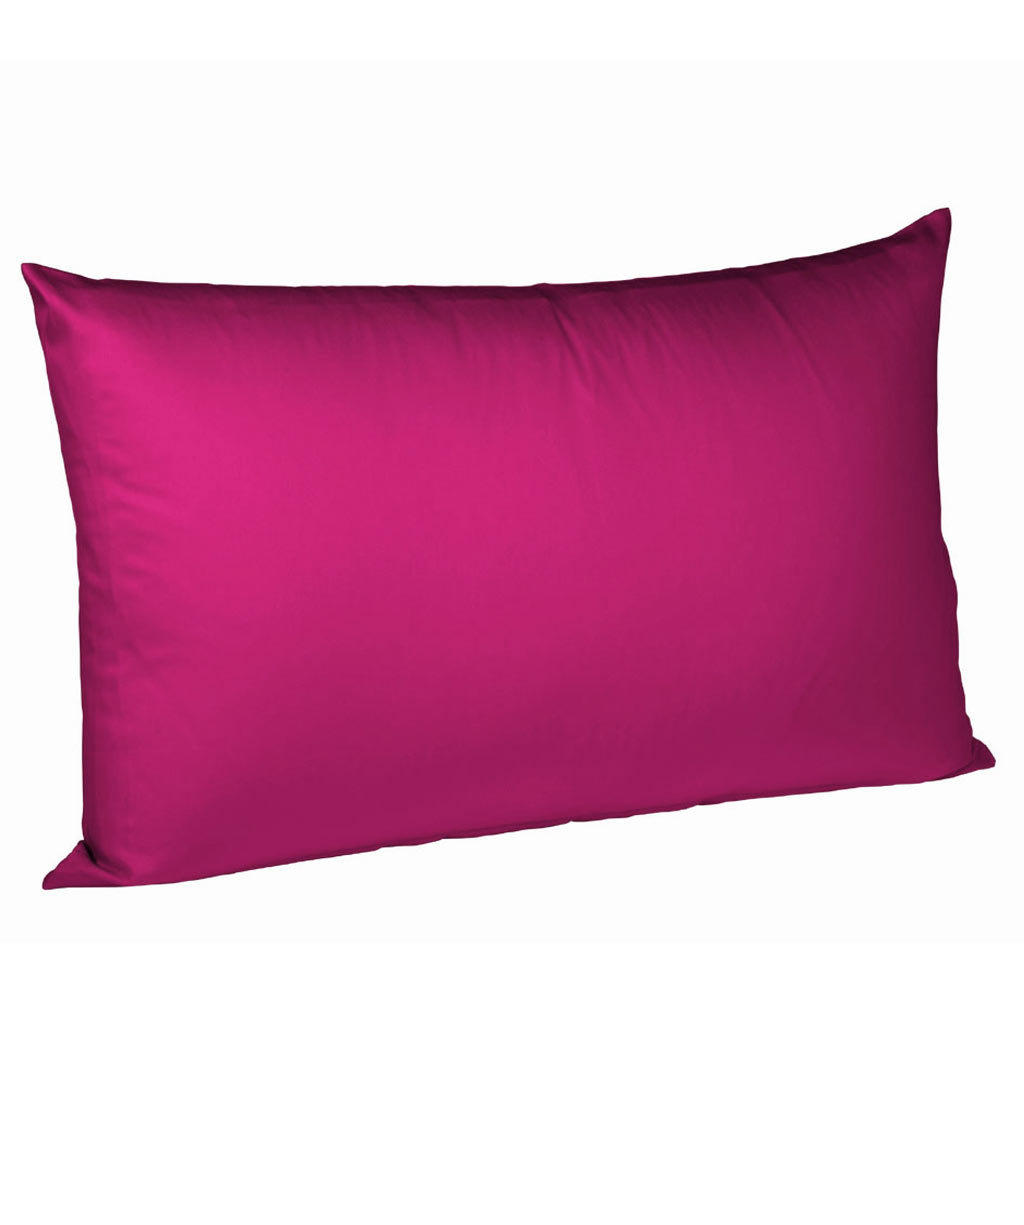 POVLAK NA POLŠTÁŘ, 70/90 cm, bavlna - pink, Basics, textil (70/90cm) - Fleuresse